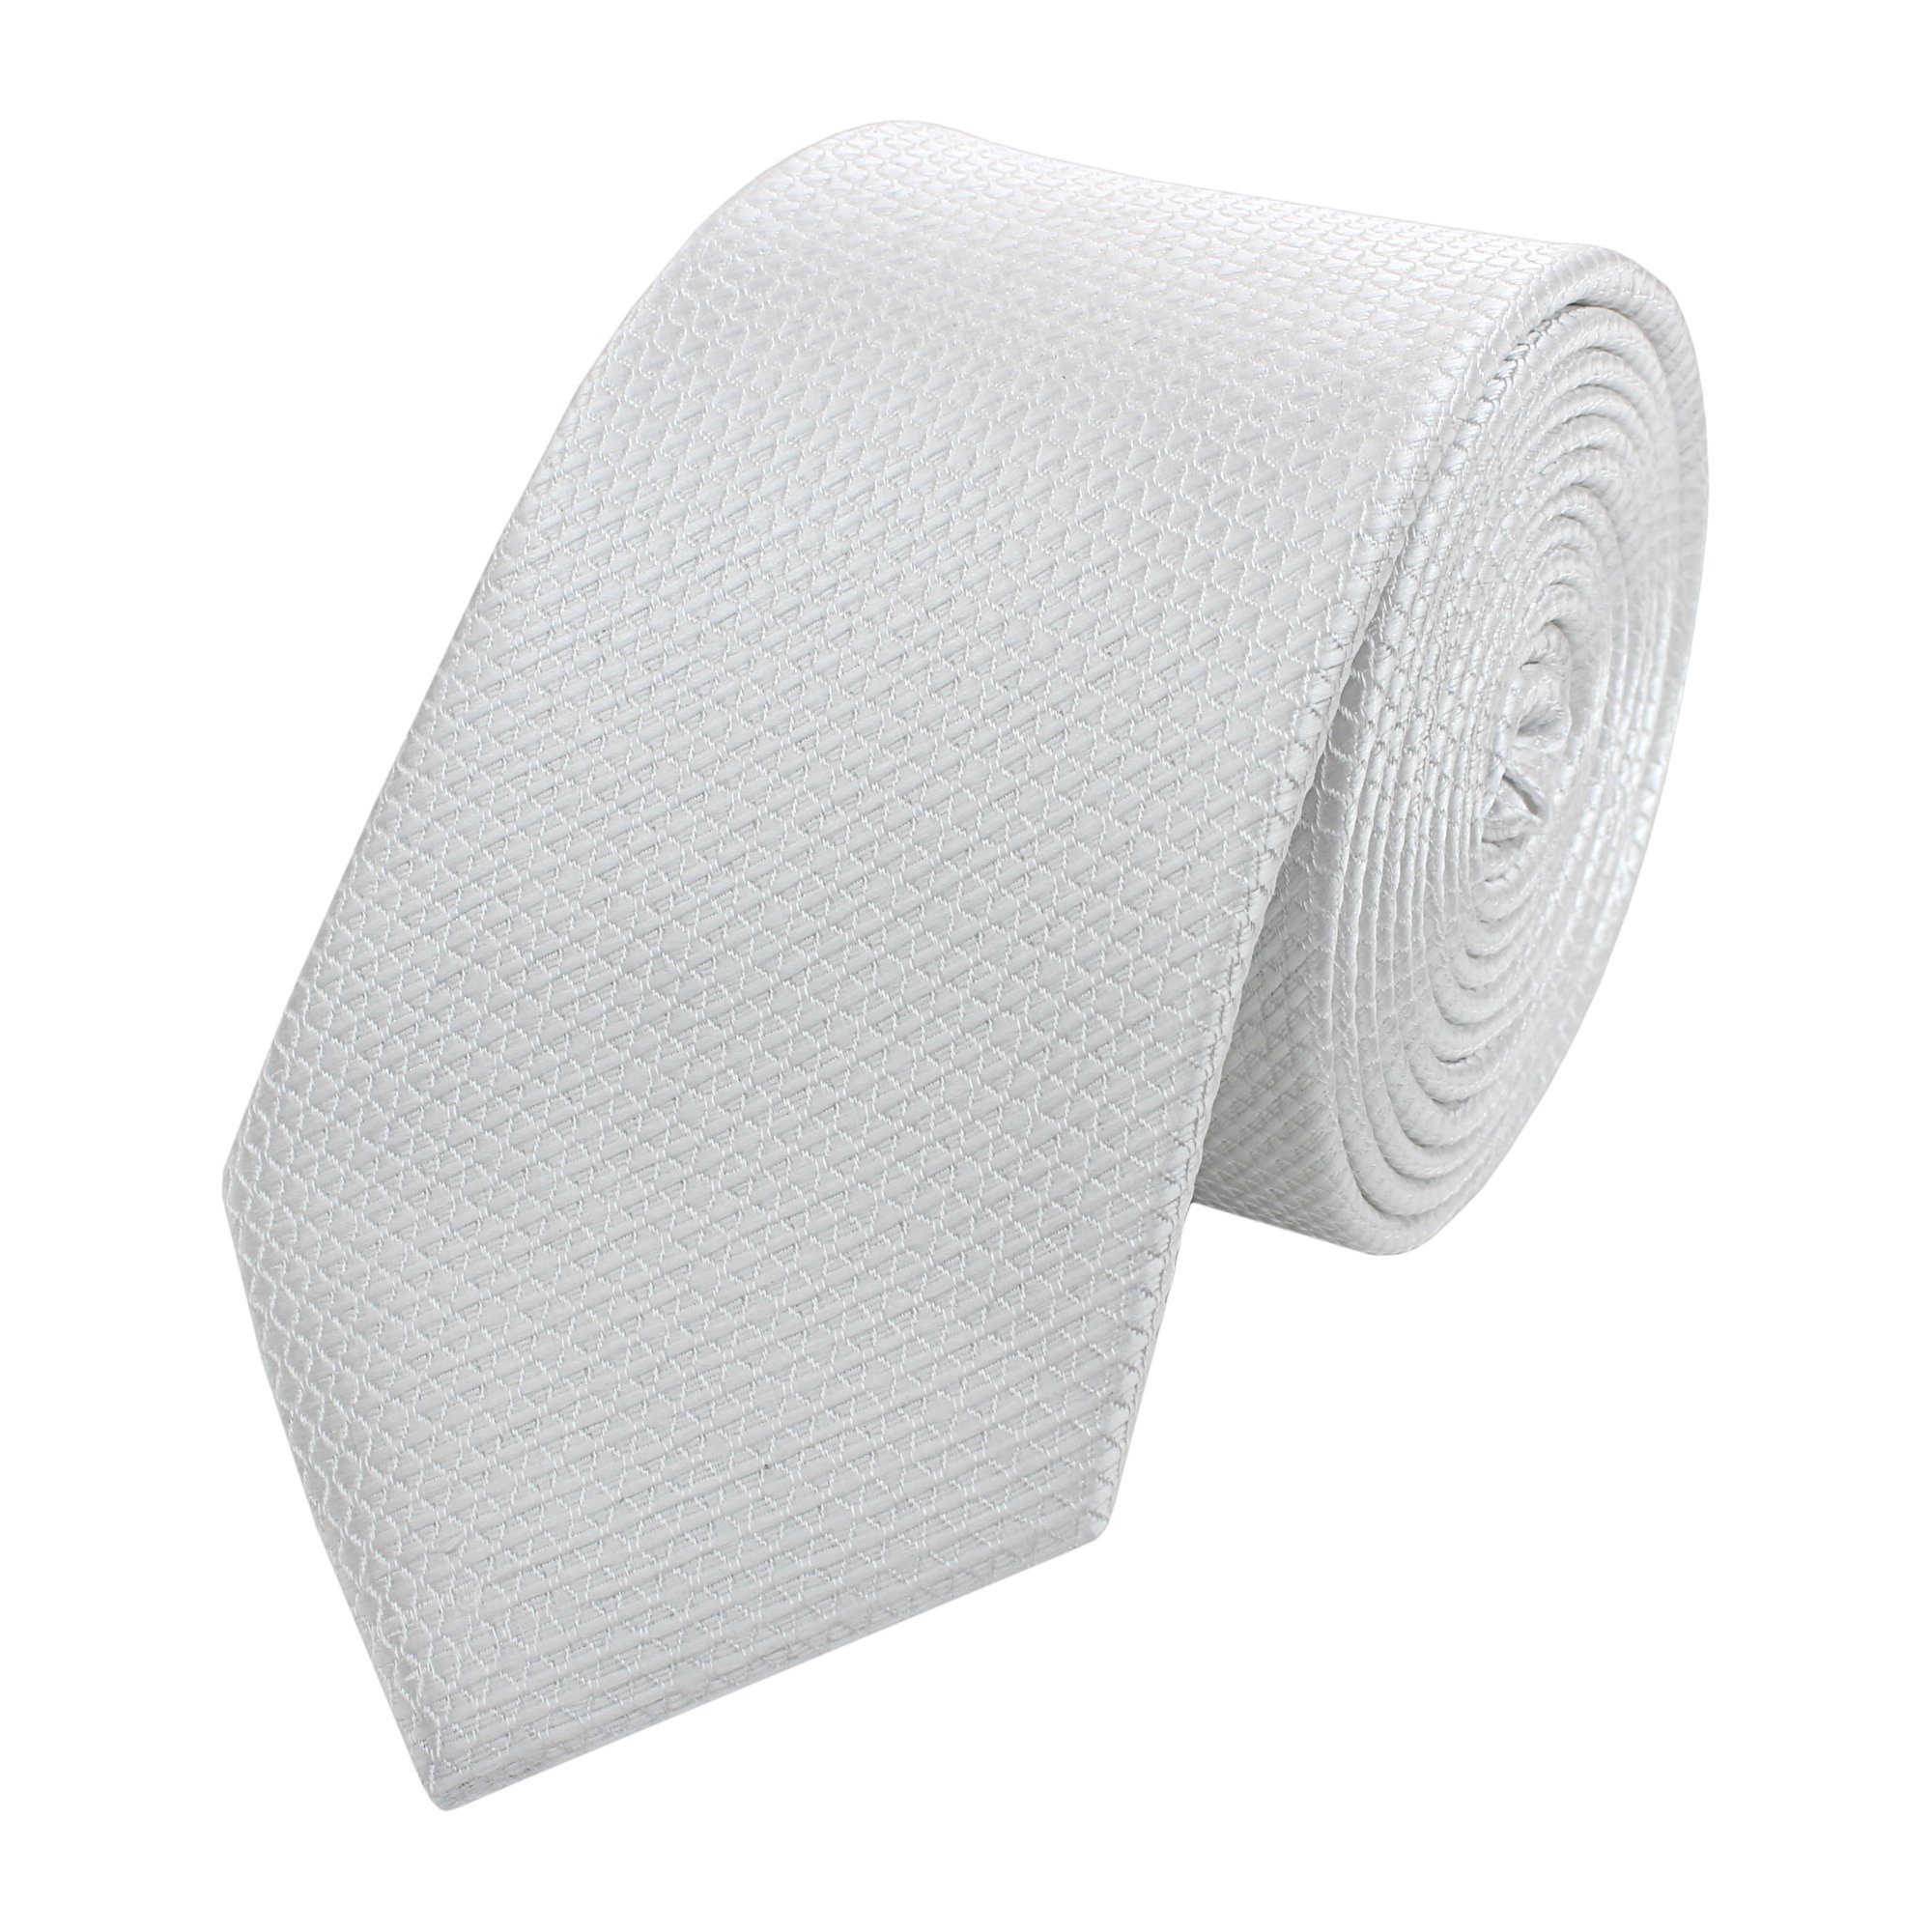 Fabio Farini Krawatte Herren Krawatte Weiß - verschiedene Weiße Männer Schlips in 6cm (Unifarben) Schmal (6cm), Weiß Silber - Silver Dollar